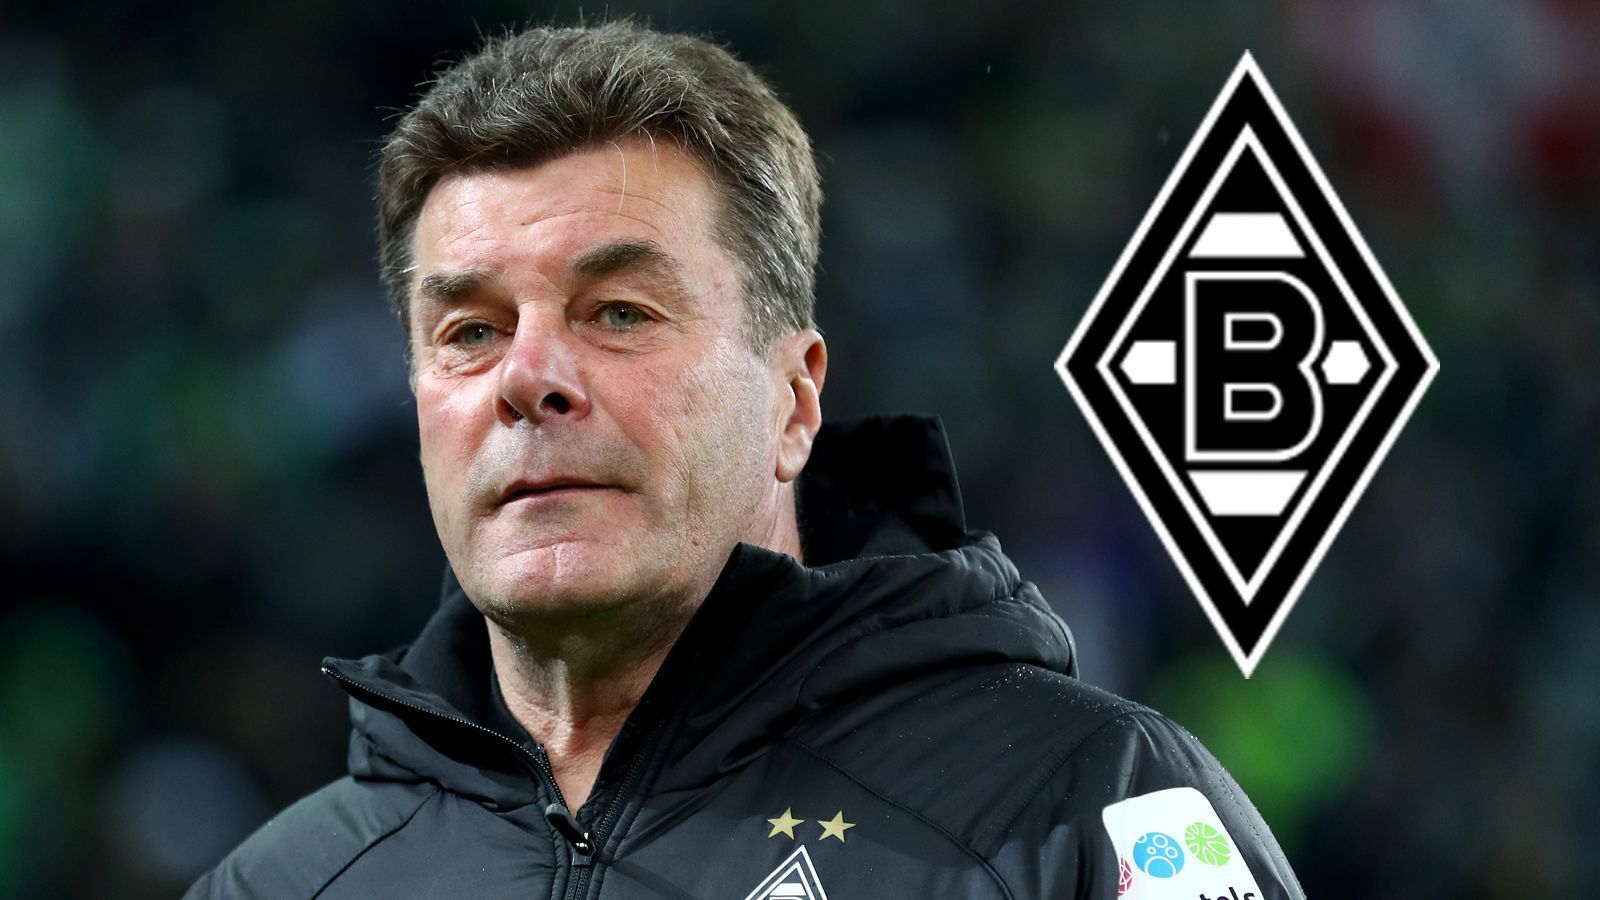 
                <strong>Borussia Mönchengladbach</strong><br>
                In Gladbach gibt es auch seit einigen Tagen Klarheit, zumindest für den noch amtierenden Trainer Dieter Hecking. Obwohl dessen Vertrag erst im November 2018 vorzeitig bis 2020 verlängert wurde, gehen die "Fohlen" und der 54-Jährige nach dem Ende der laufenden Saison getrennte Wege. Um Hecking gibt es nun wiederum auch schon Gerüchte, nämlich, dass er möglicherweise als Sportdirektor zu seinem Ex-Klub Hannover 96 zurückkehren könnte.
              